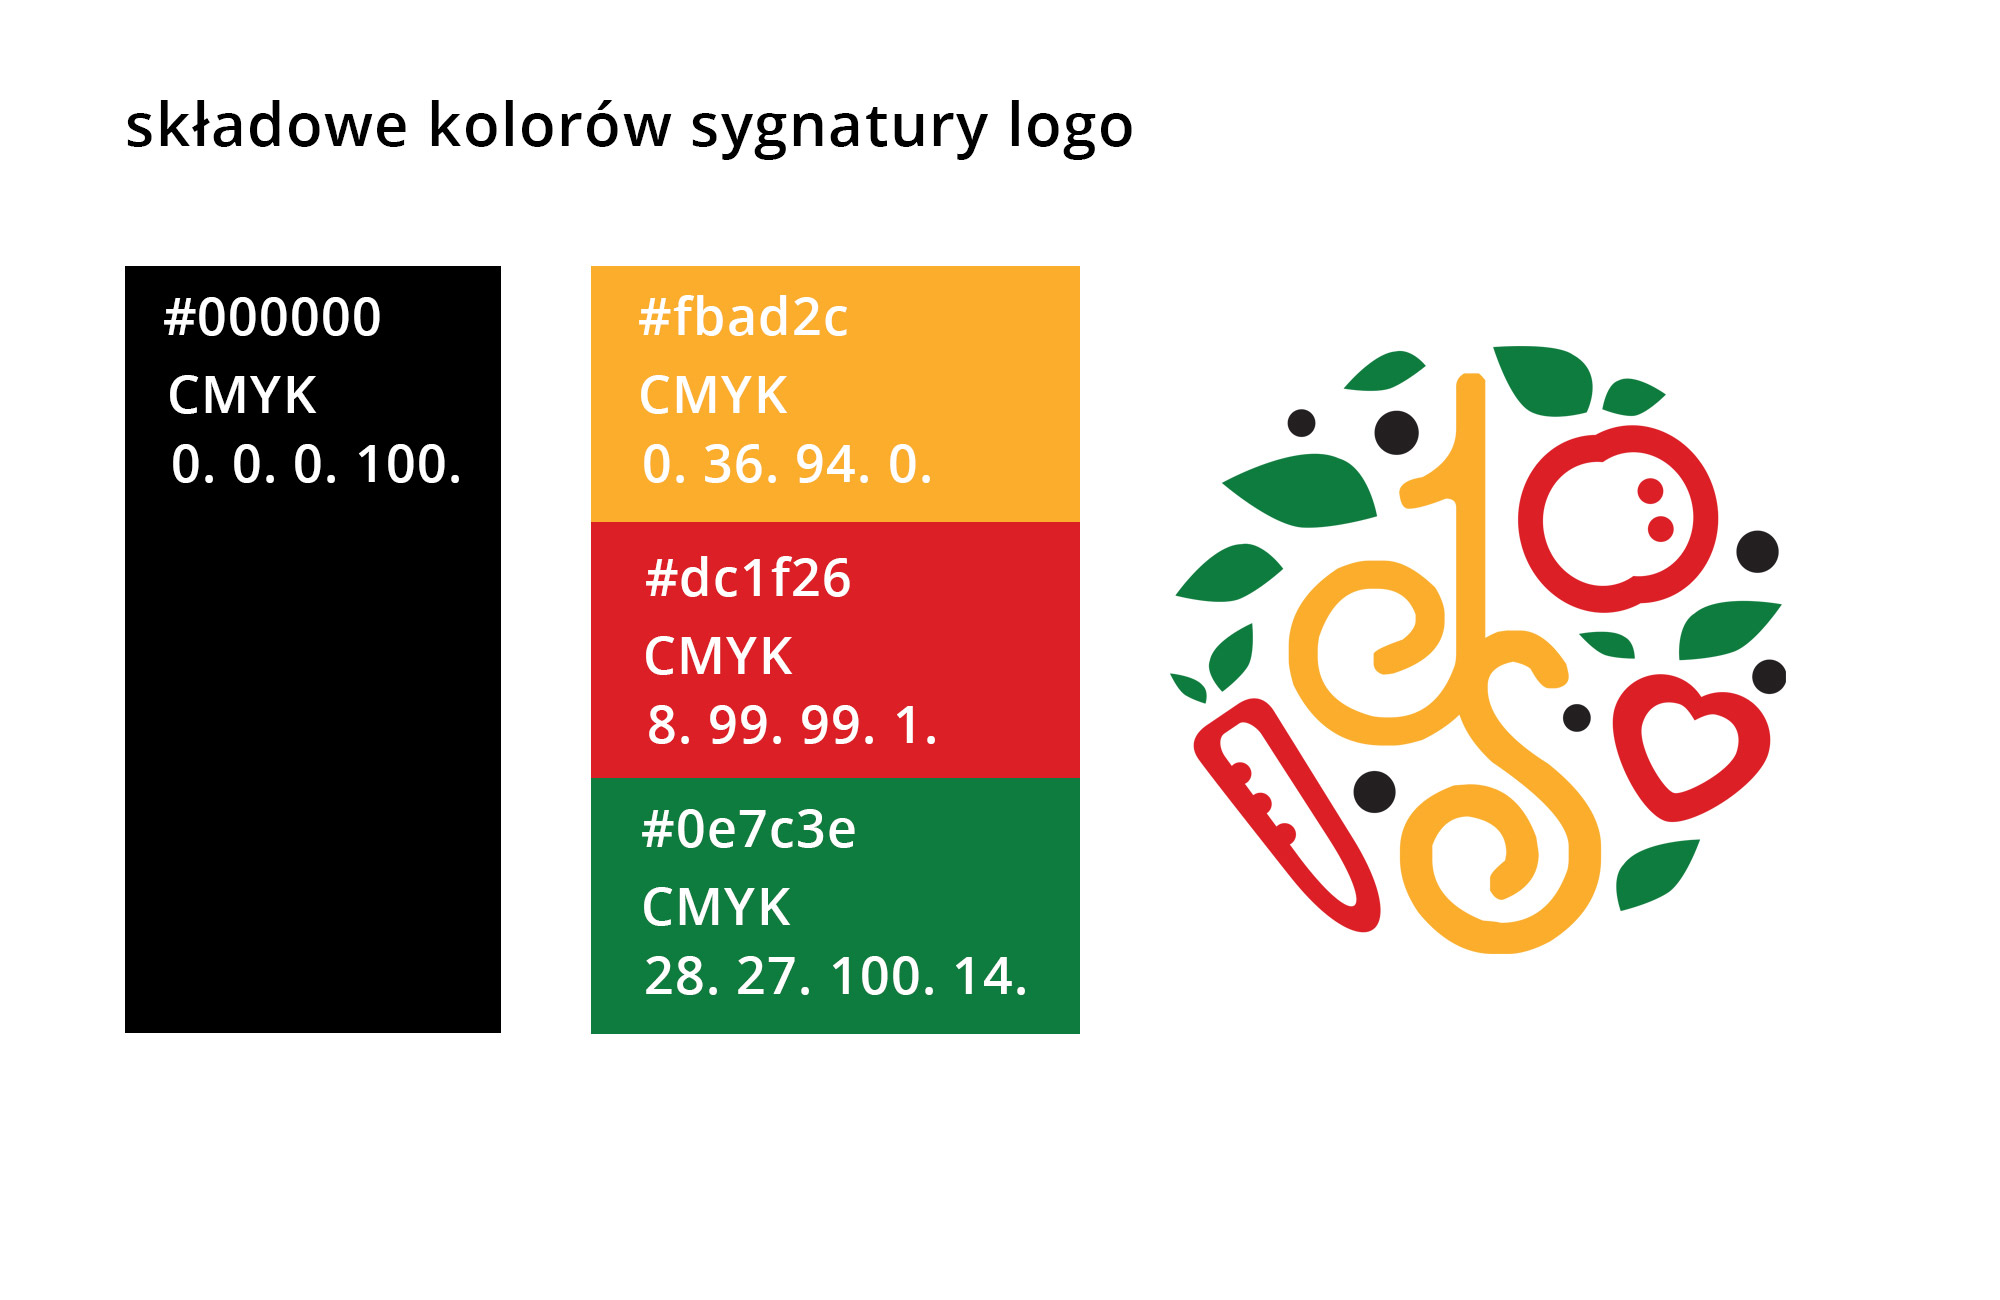 Logo, logotyp, strony internetowe Kołobrzeg, Koszalin, szczecin. Logo dietetyczka - Jowita Sikora. Plakaty, wizytówki, ulotki. Shadowart